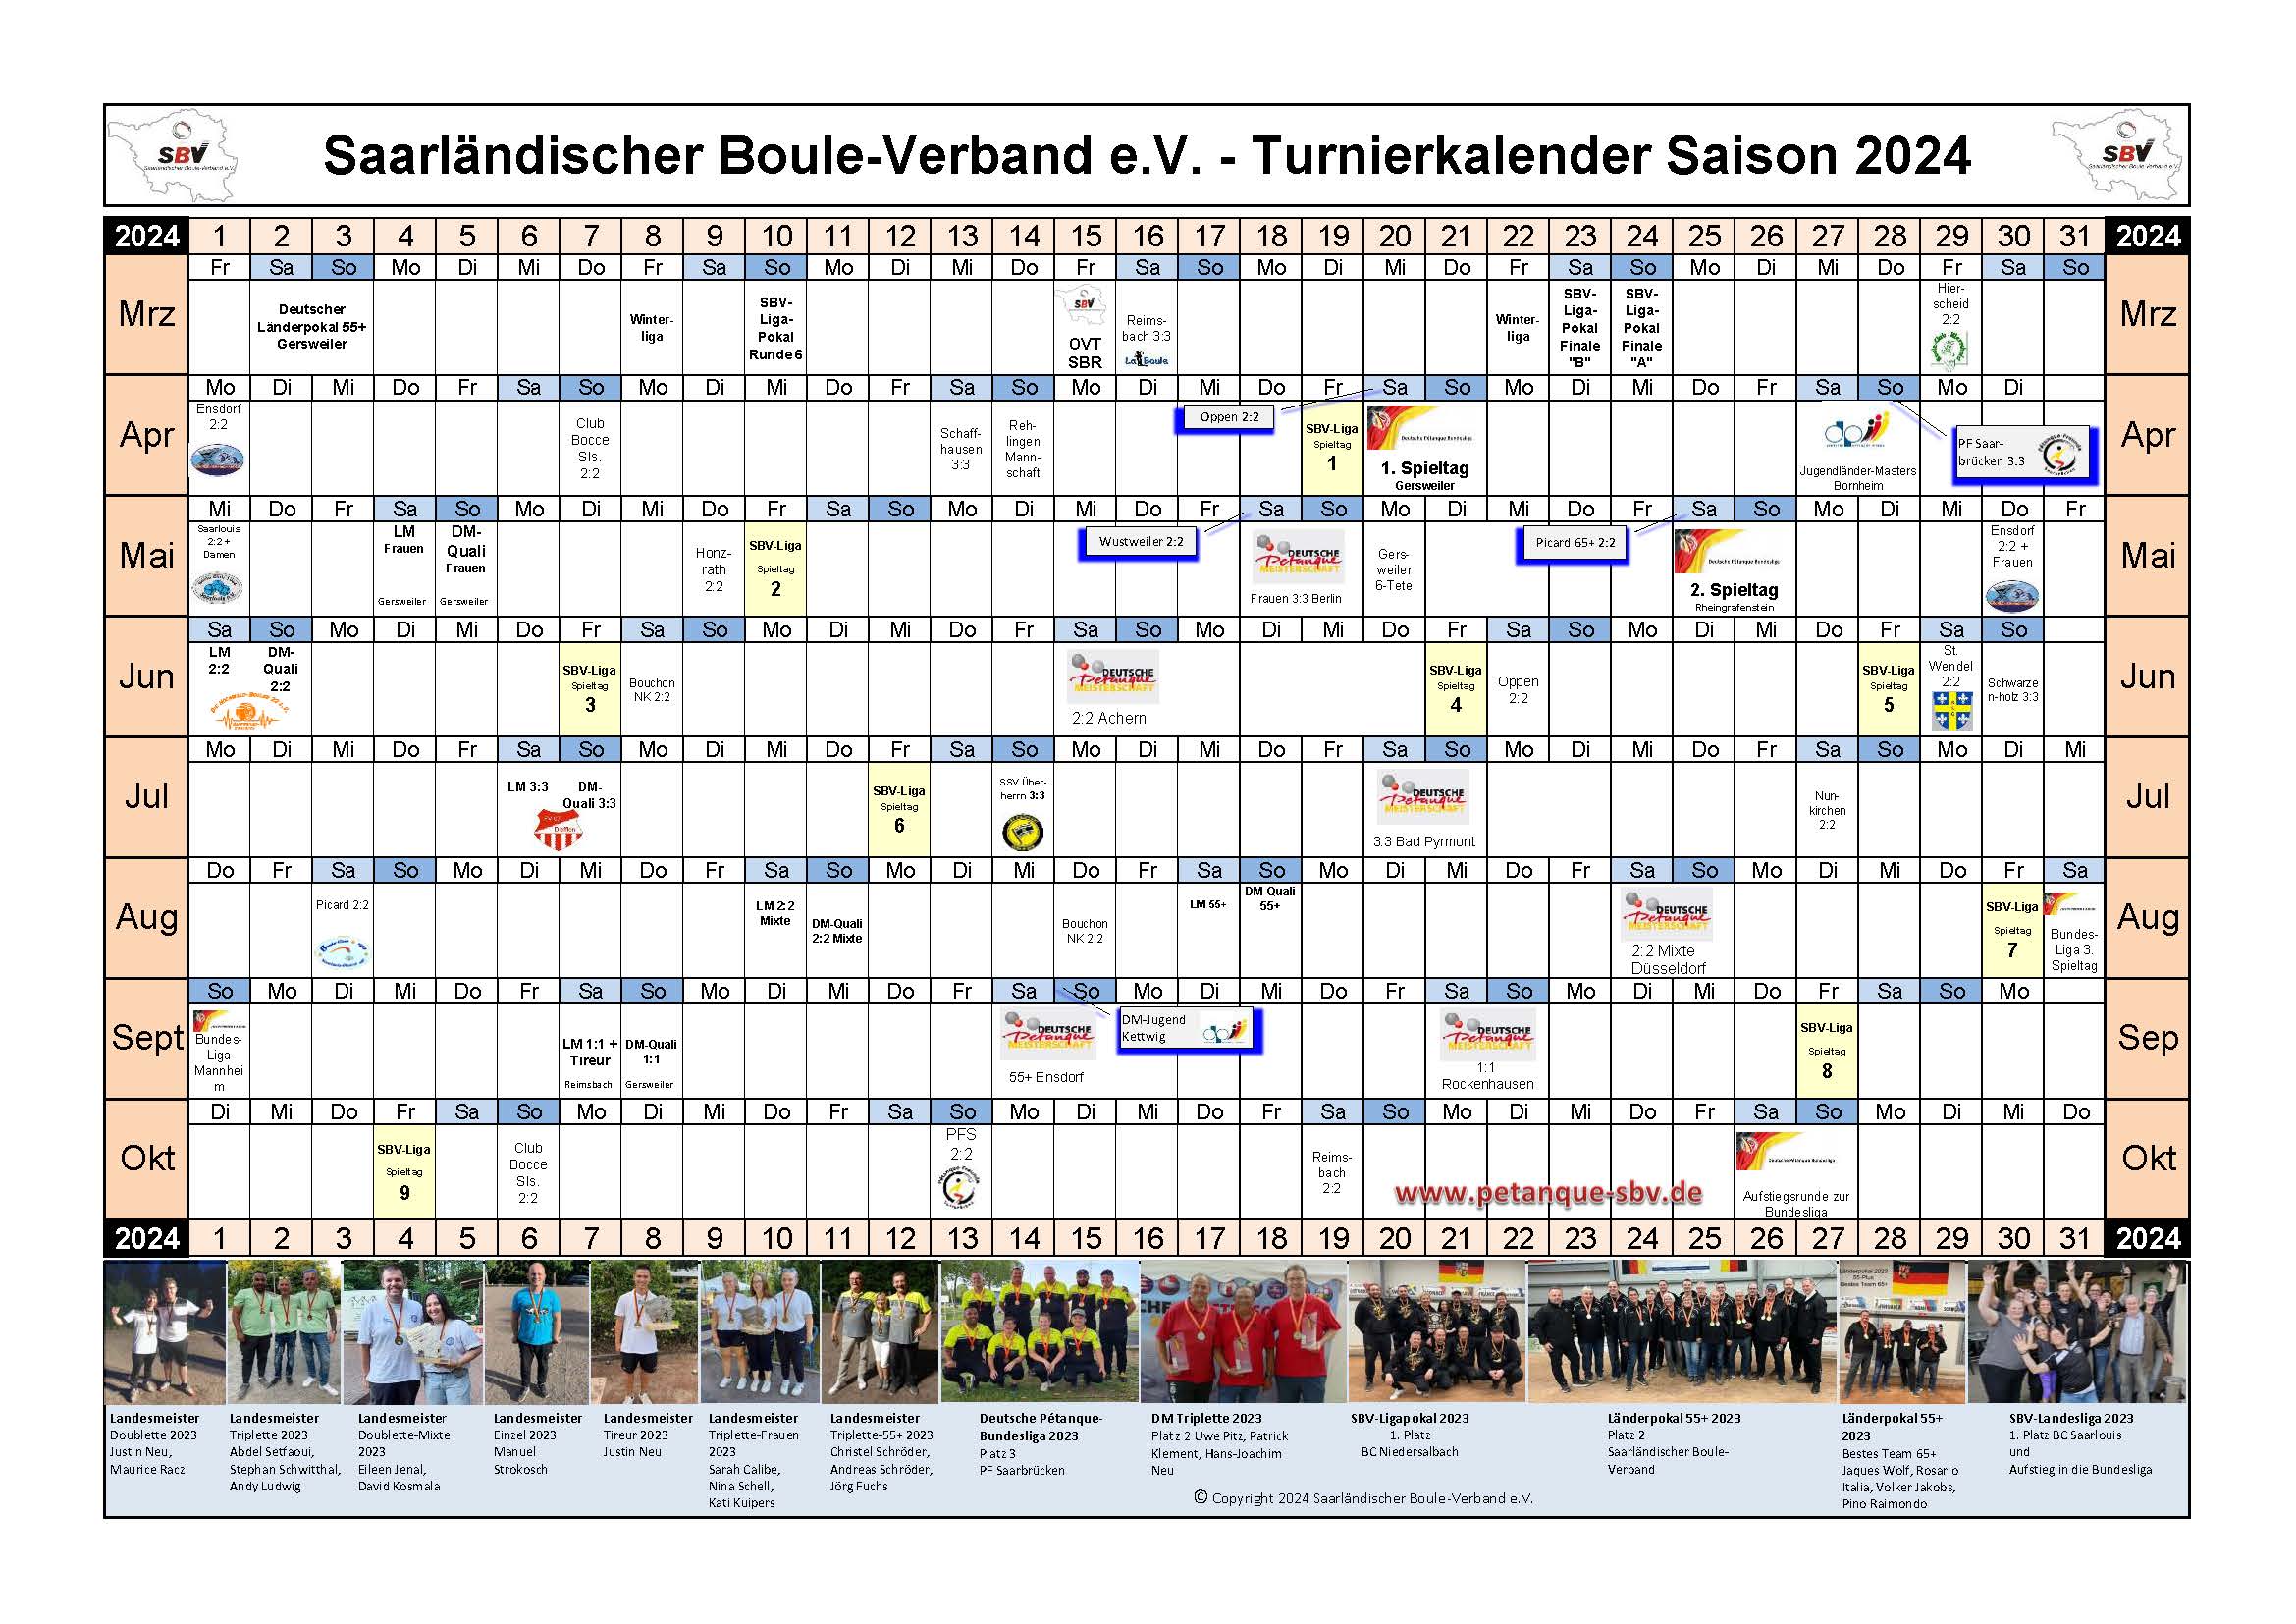 SBV Turnier Kalender 2024